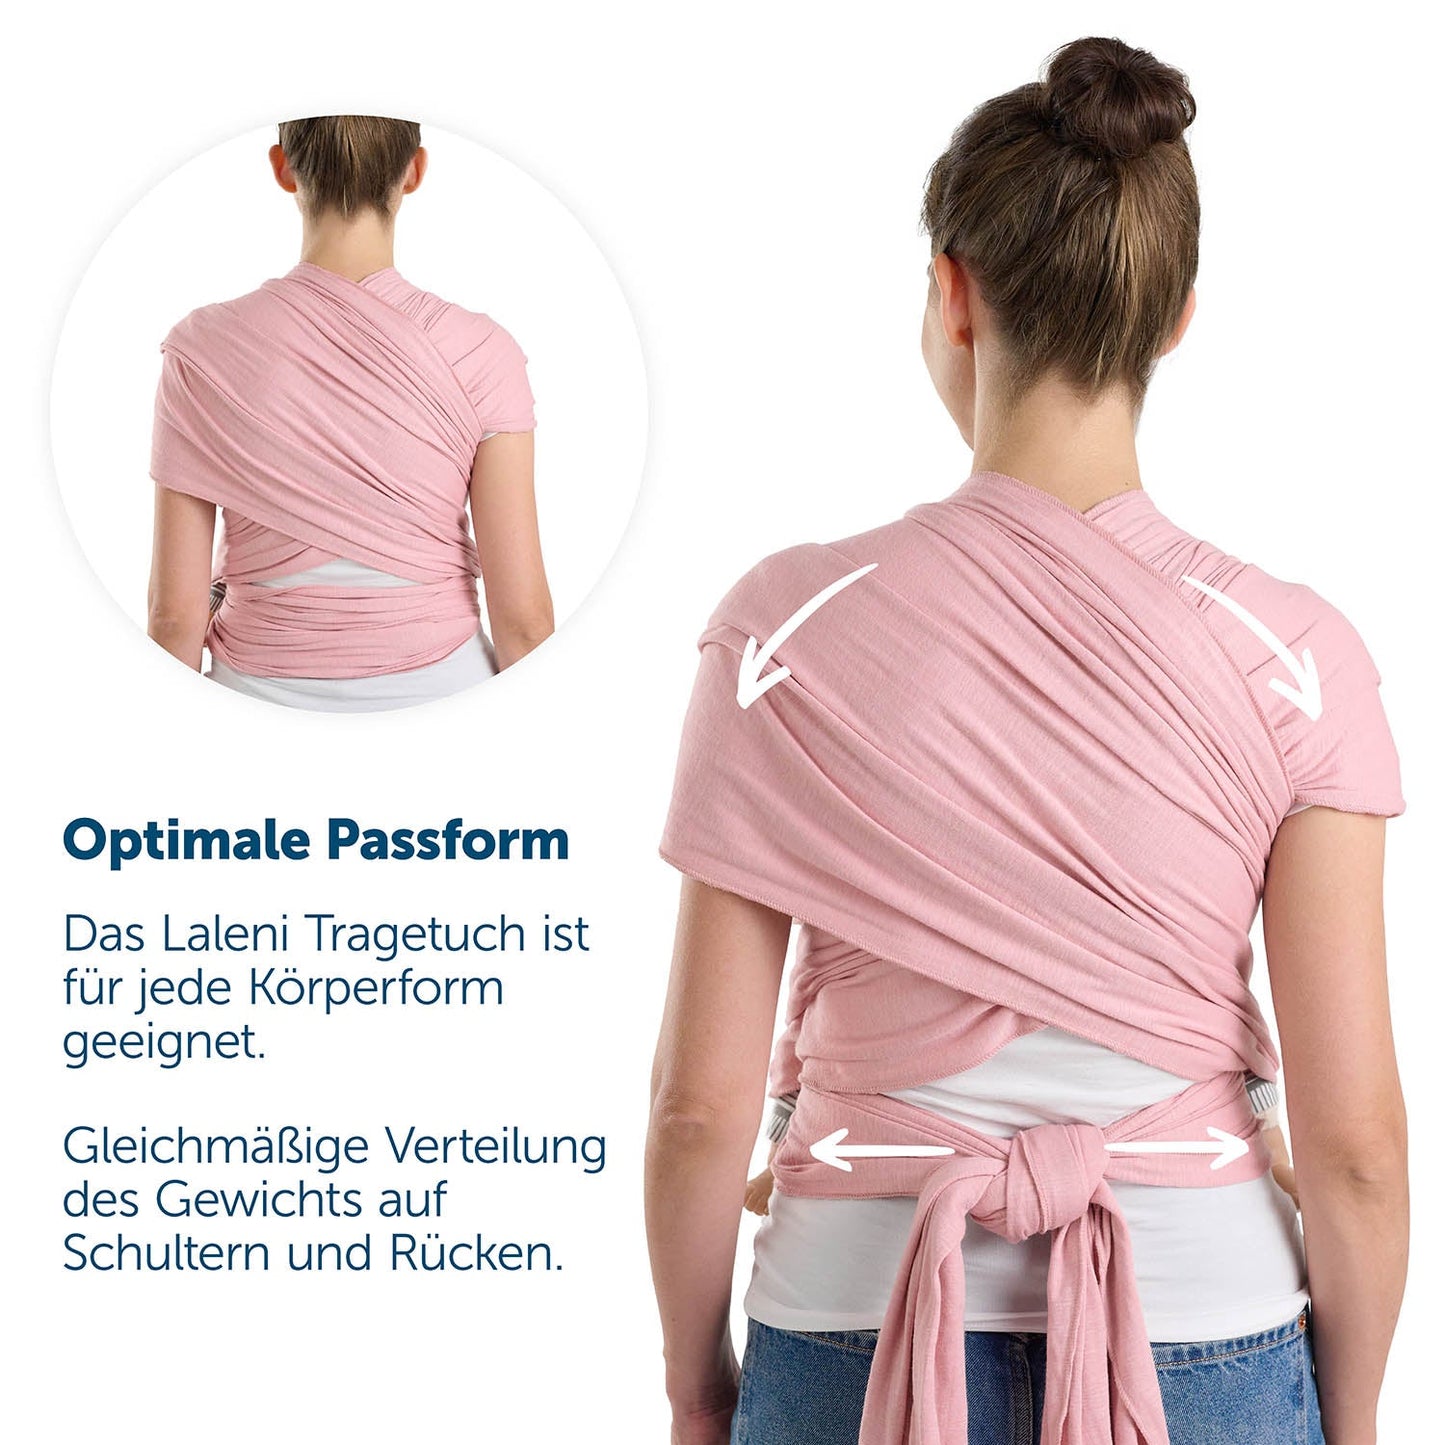 Rückenansicht einer Frau in roter Tragetuch mit Hinweisen zur optimalen Passform und Gewichtsverteilung.